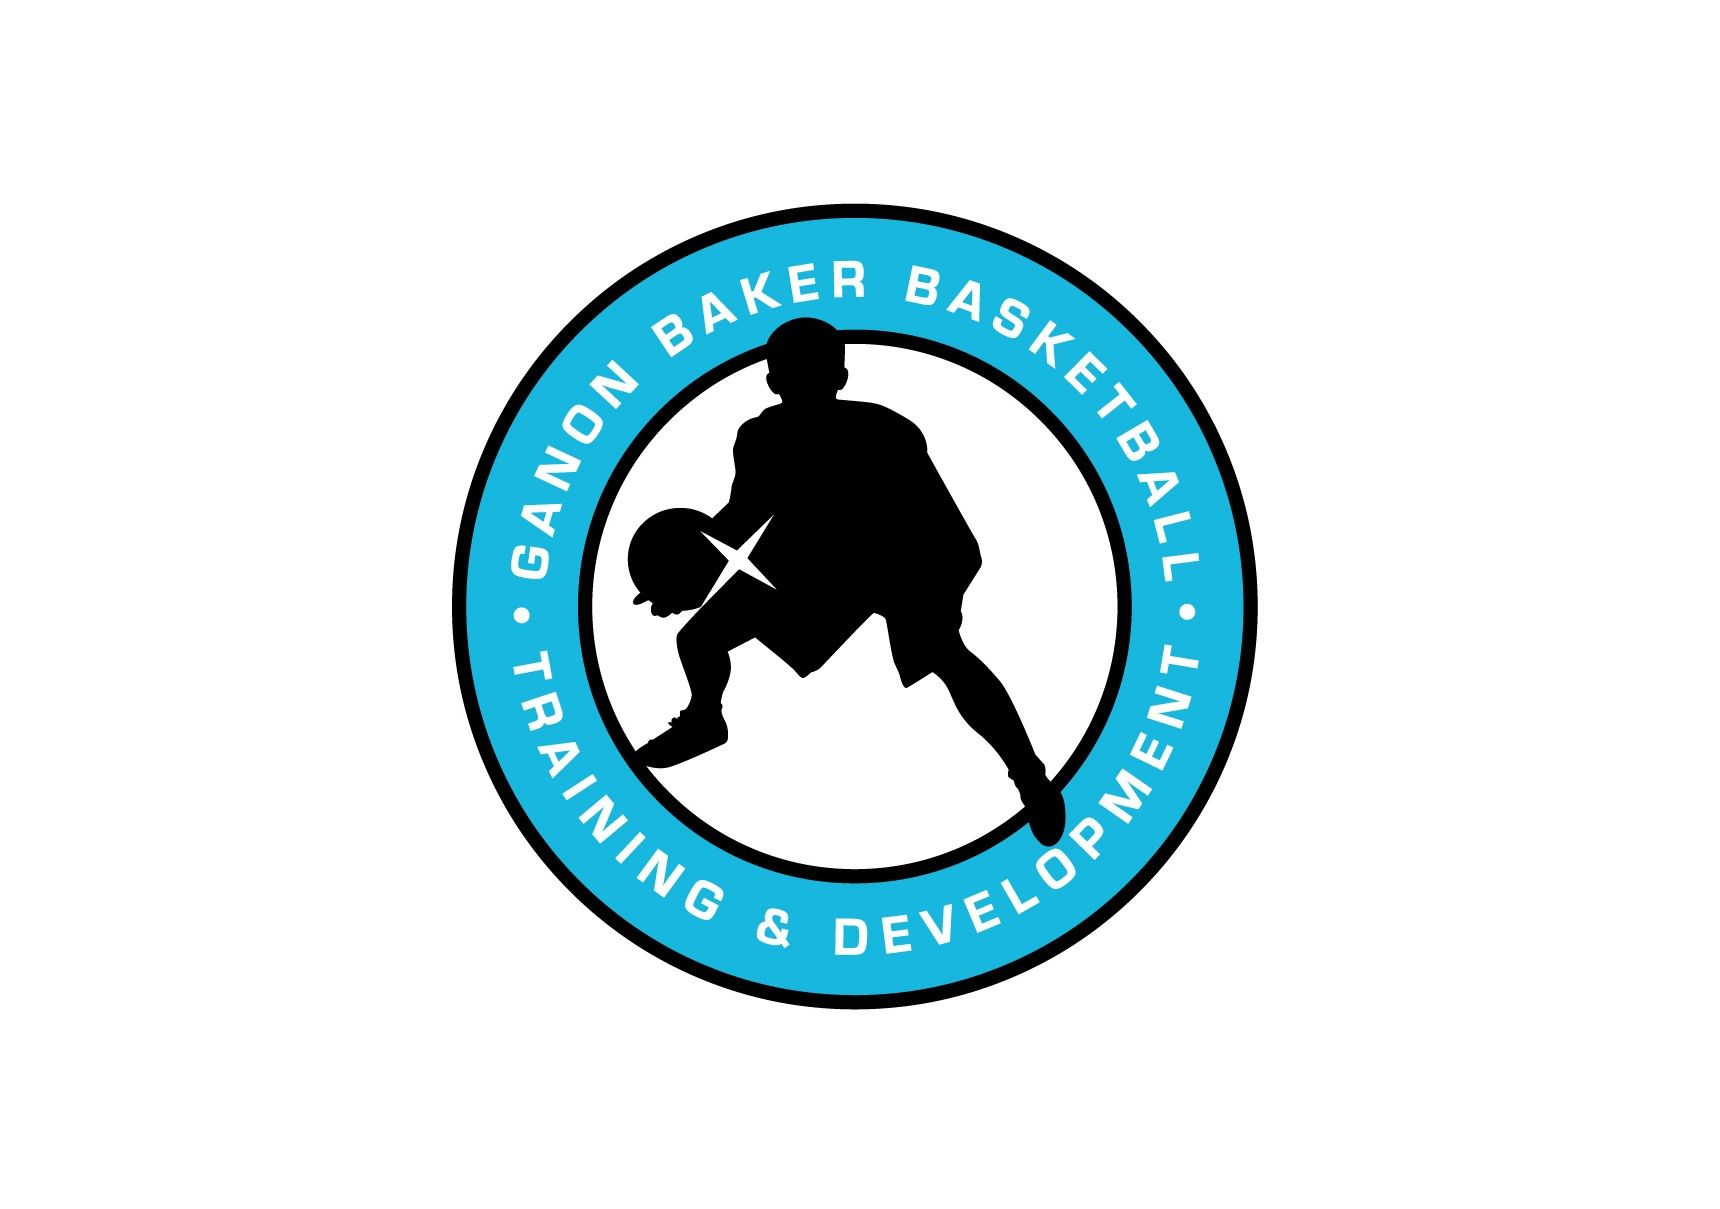 Basketball Training and Development - Ganon Baker Basketball